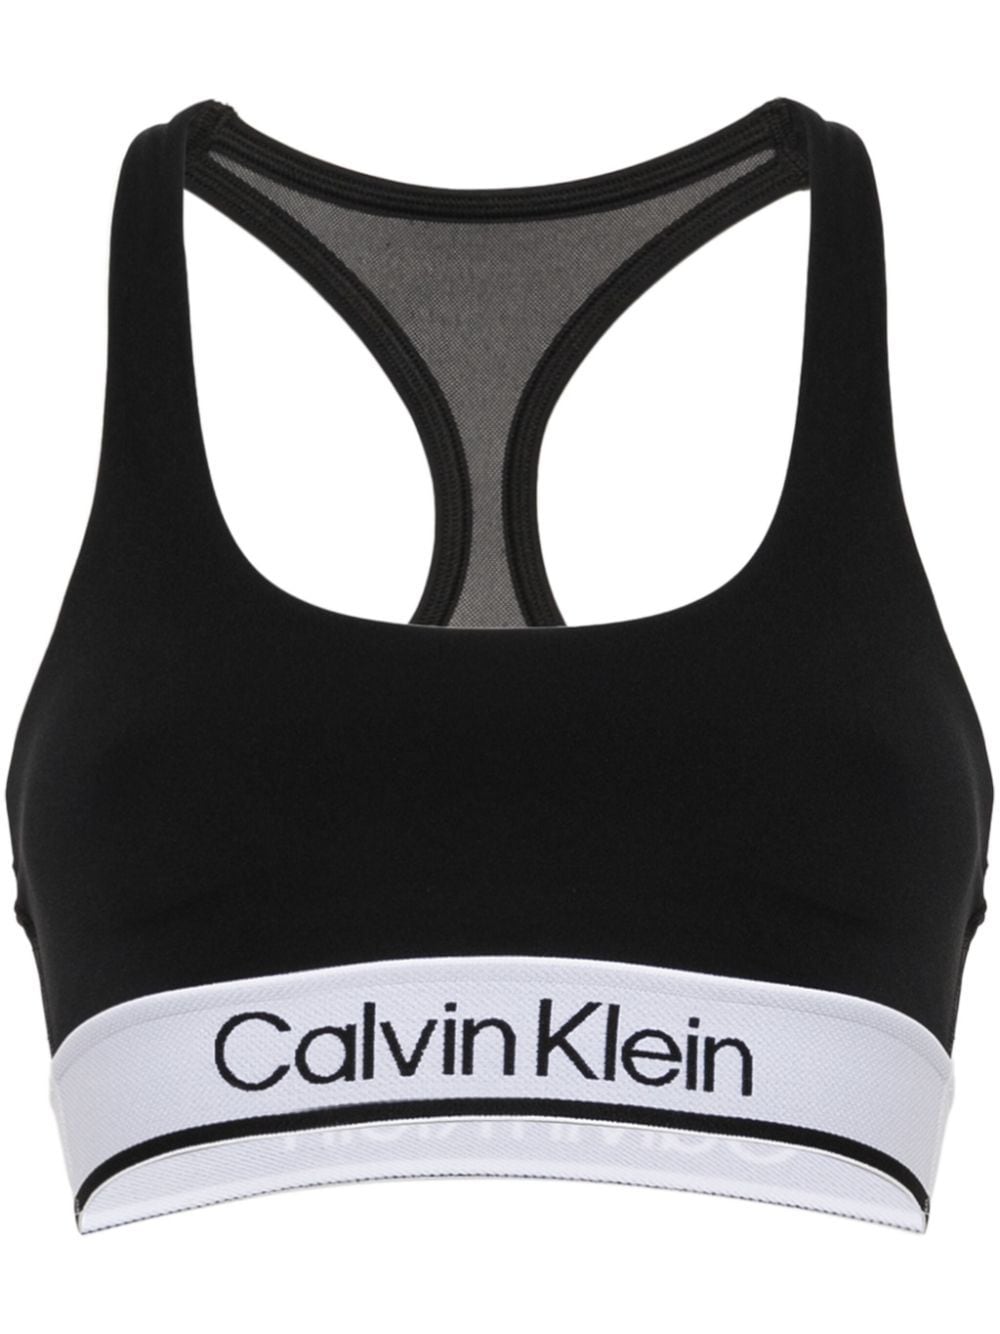 logo-underband mesh sports bra, Calvin Klein